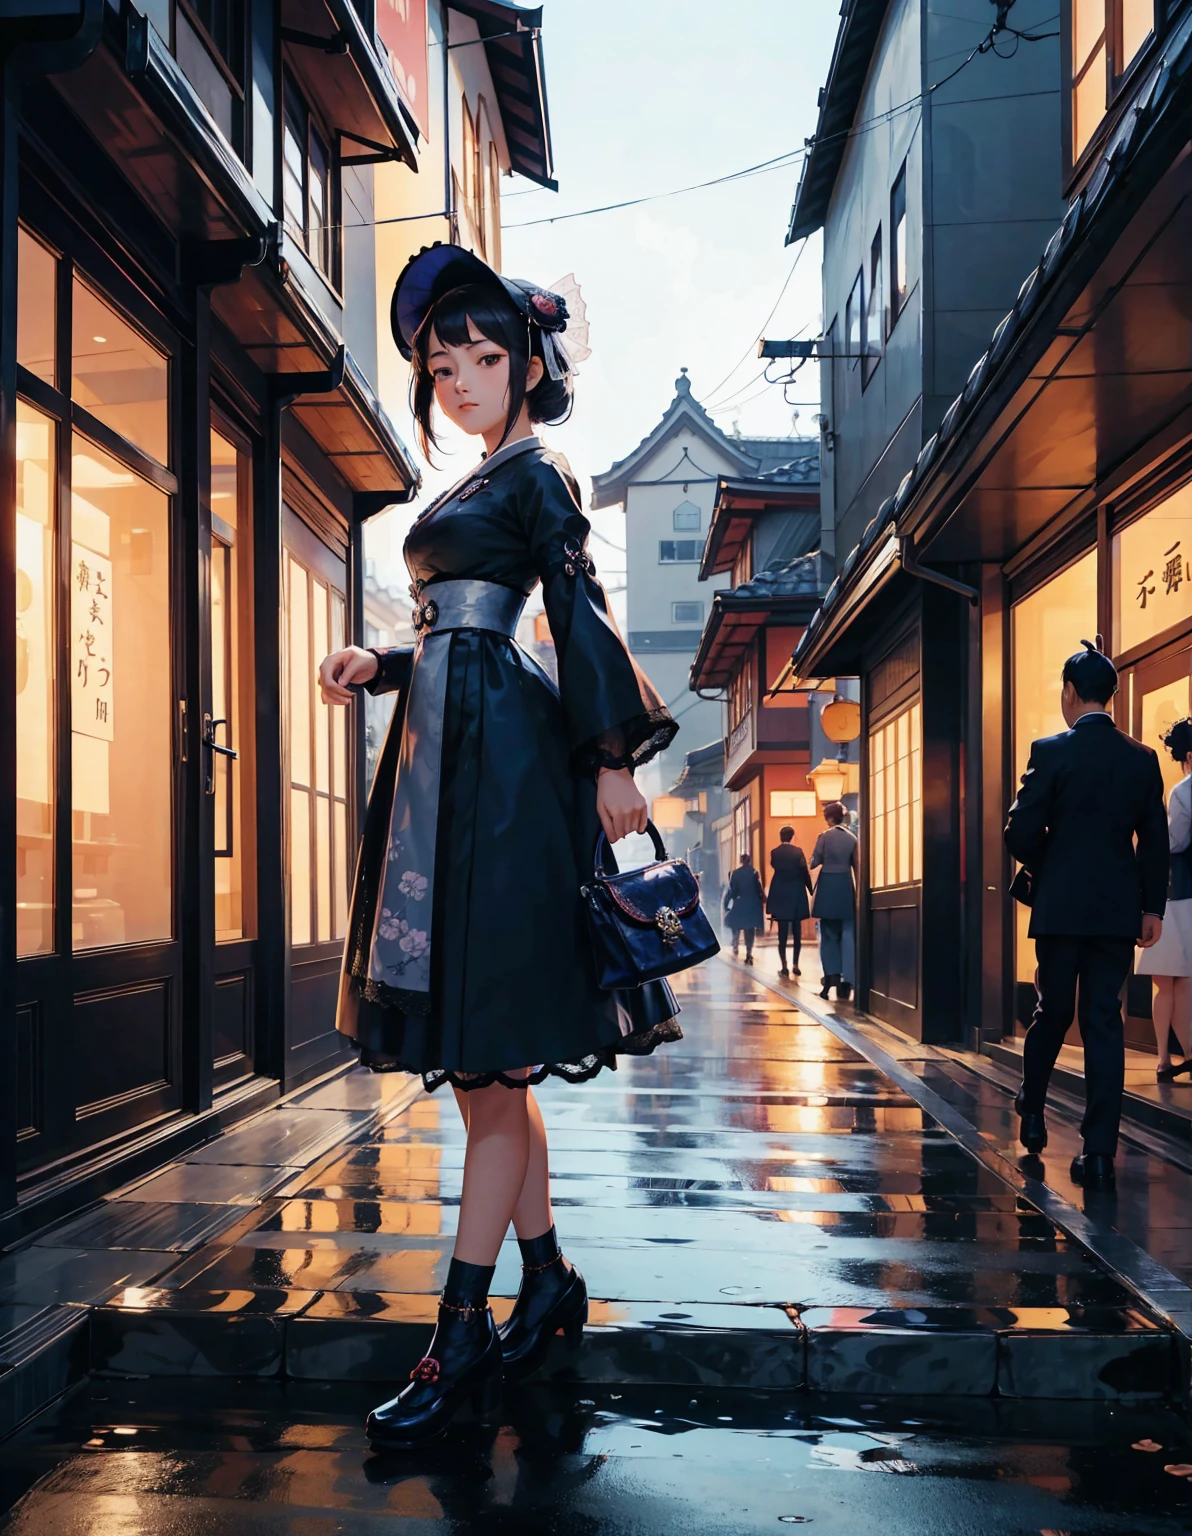 身着日本哥特式洛丽塔服装的年轻女孩漫步在大正时代的街道上. 街道上装饰着老式灯笼和传统商店. 她拿着一个复古的手提包，戴着一顶精致的蕾丝帽. 这一场景融合了历史魅力和哥特式优雅, 大正浪漫美学的特征. --与 3:4 --风格化 600 --niji 6
